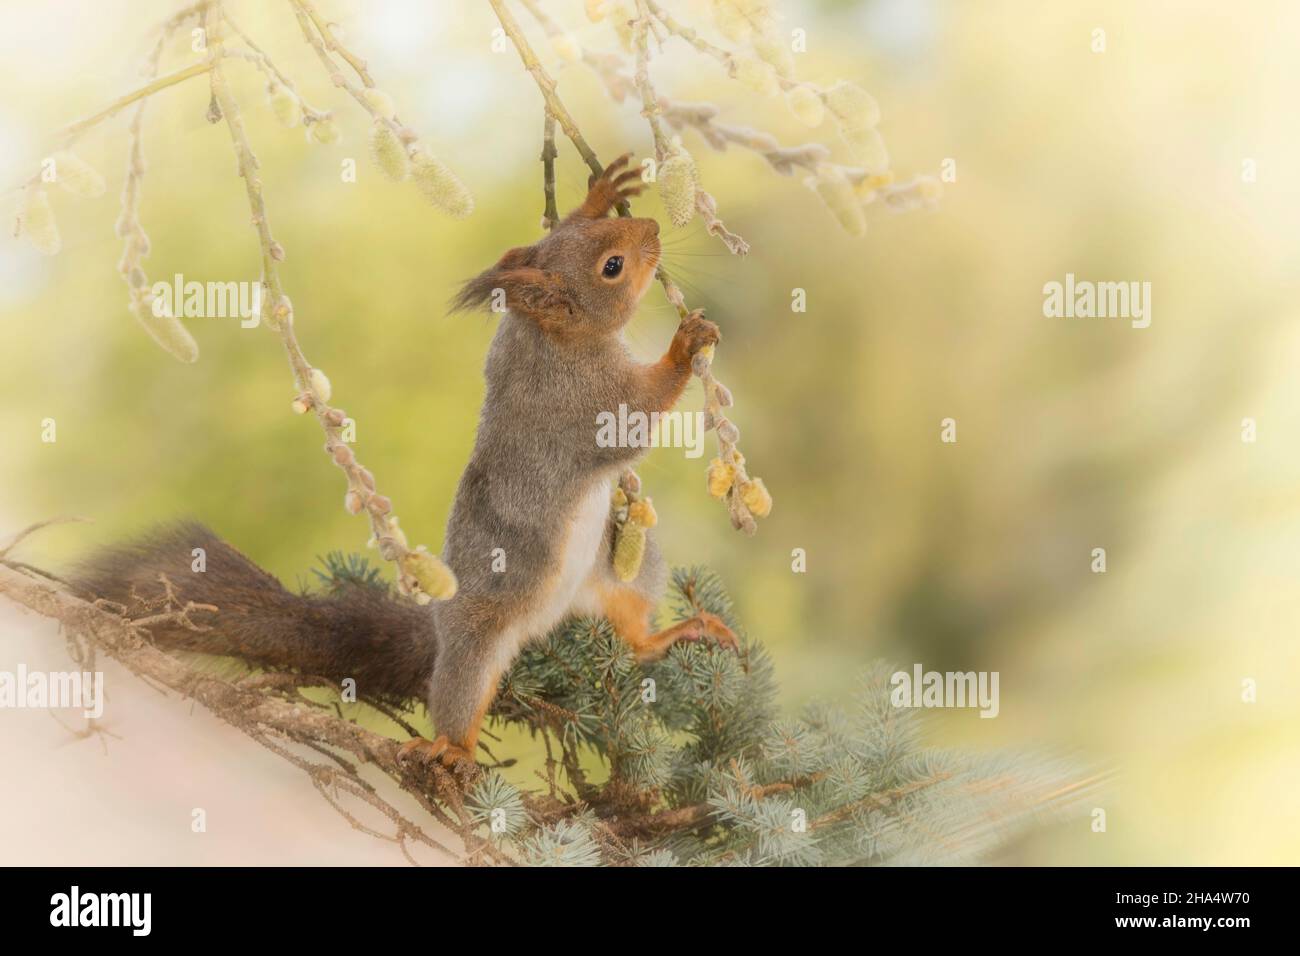 Nahaufnahme des roten Eichhörnchens, das Weidenzweige hält und nach oben klettert Stockfoto